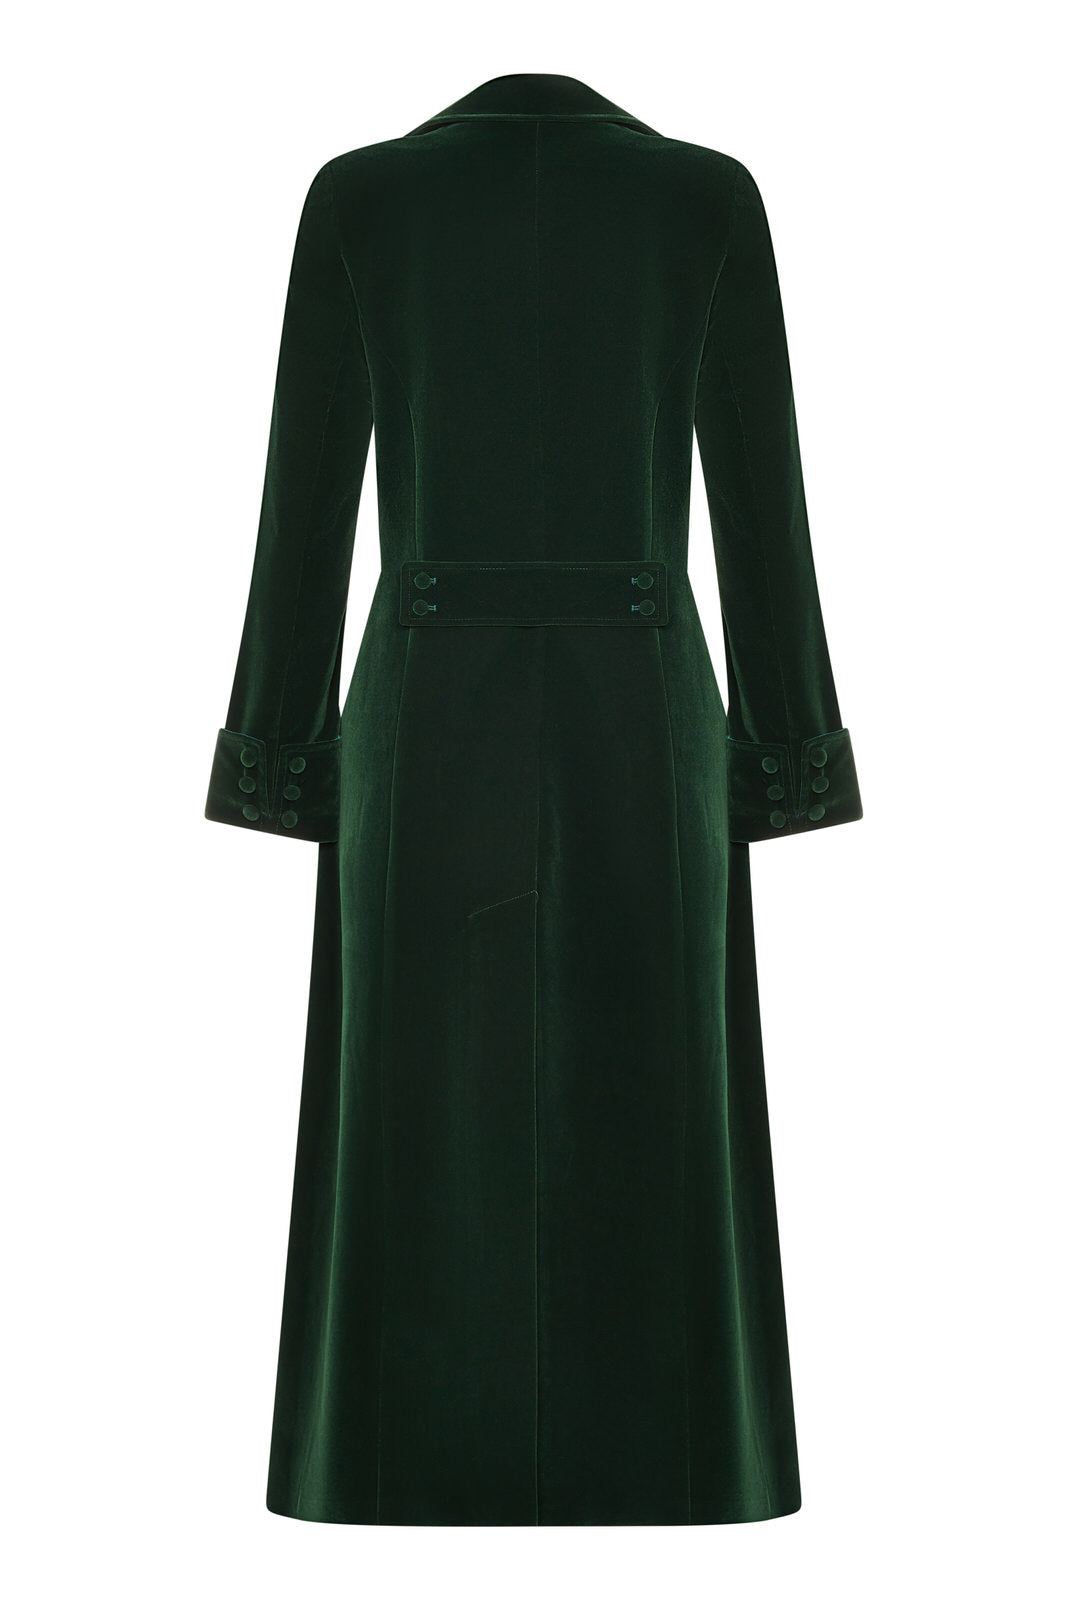 Delphi Long Green Velvet Coat - Boho Glamour